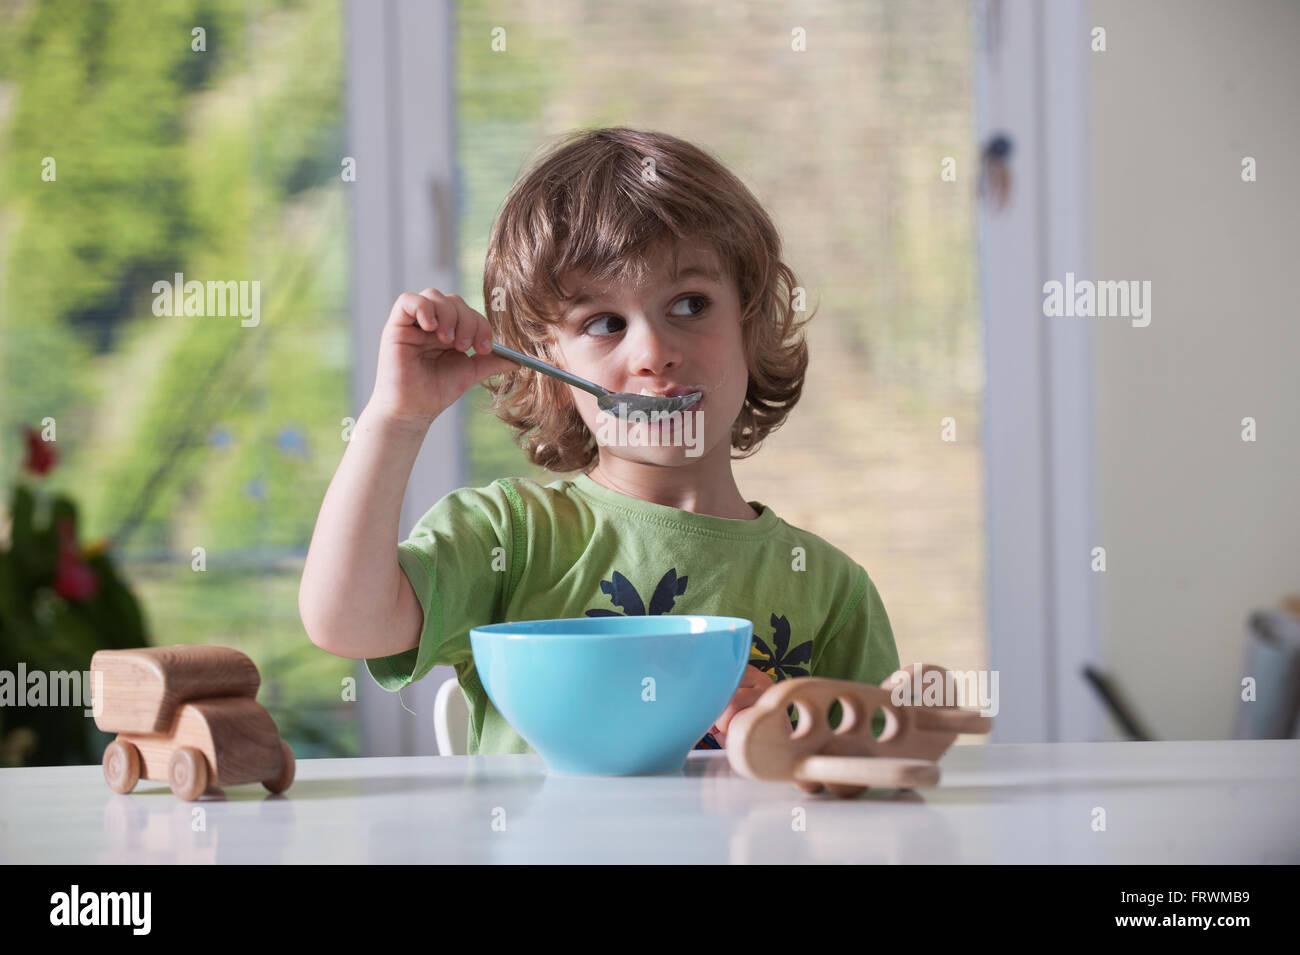 Cute little boy de manger son repas tout en jouant avec des jouets Banque D'Images